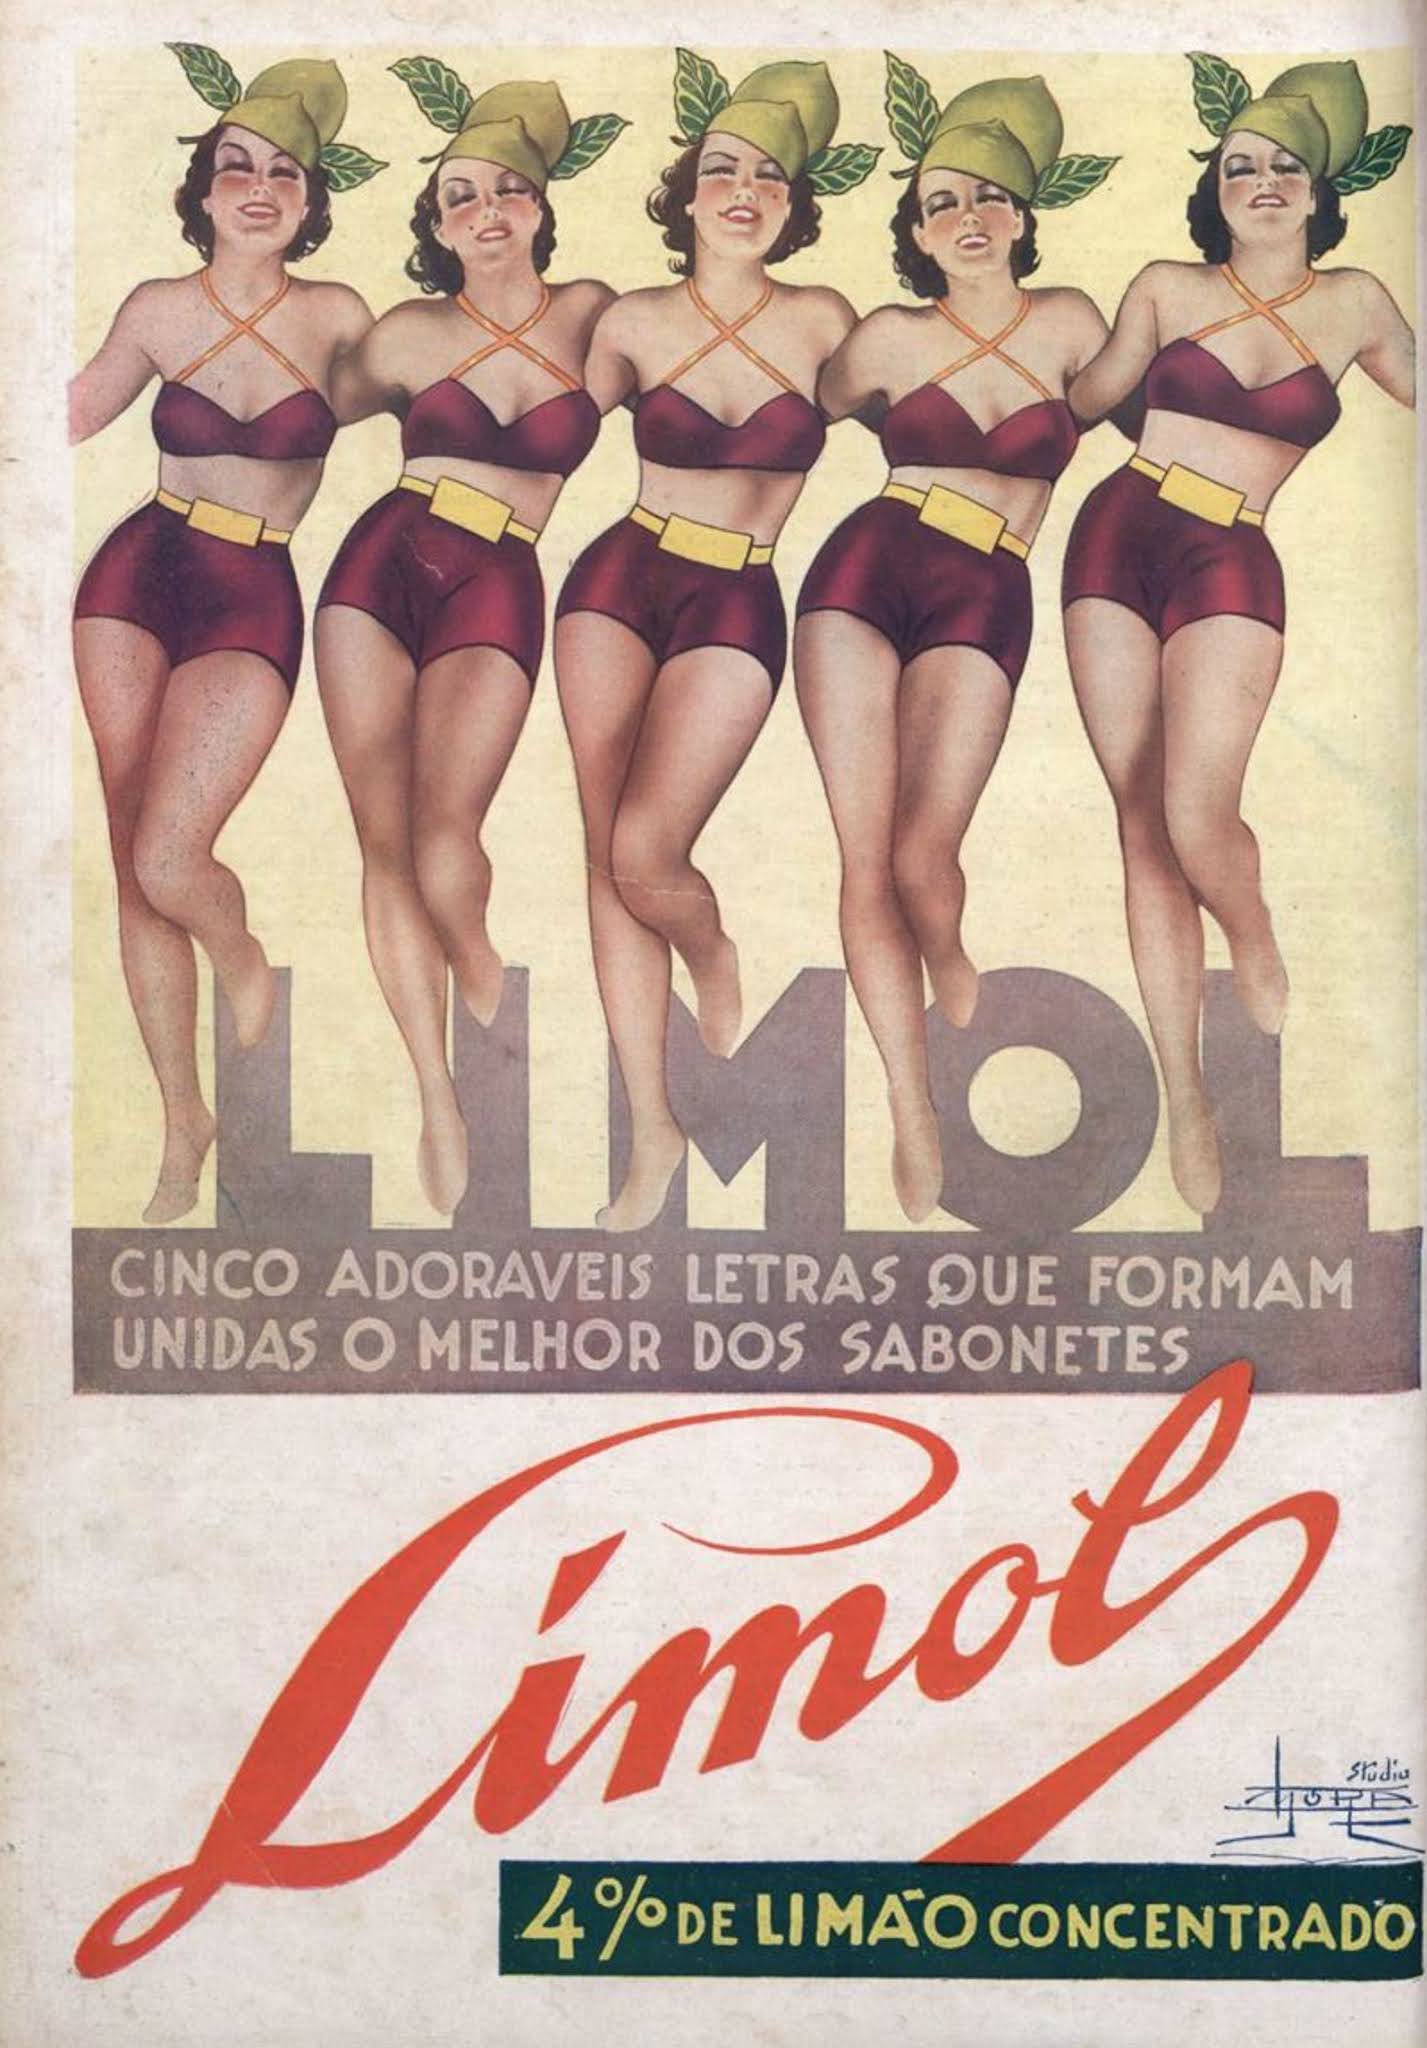 Propaganda veiculada em 1939 promovia o Sabonete a base de limão da marca Limol